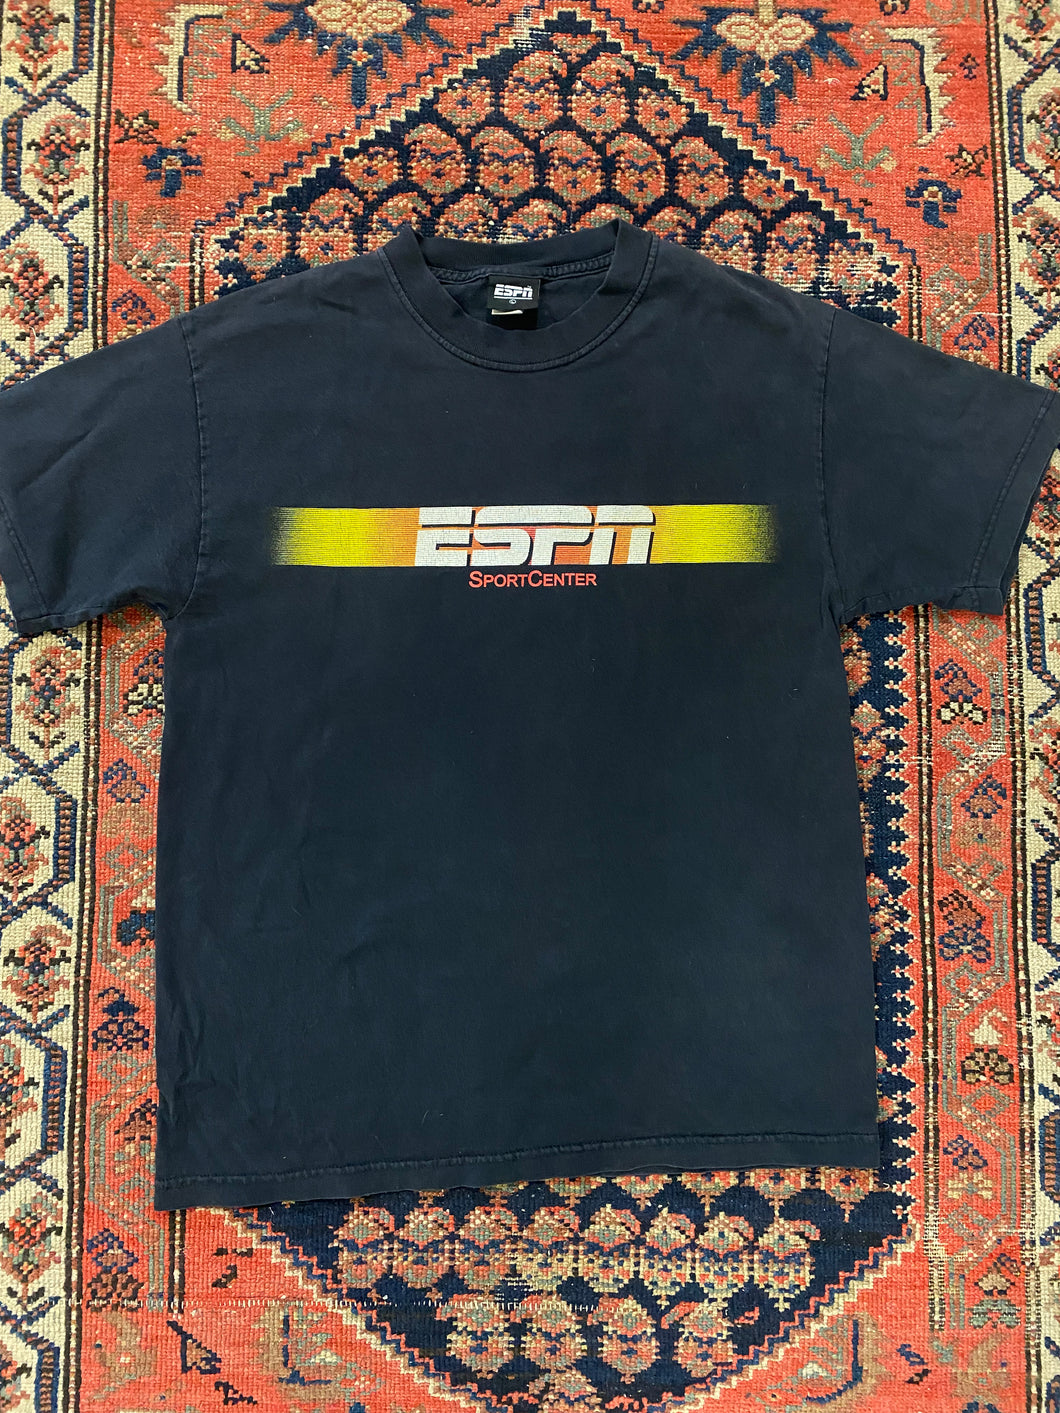 Vintage ESPN T Shirt - L